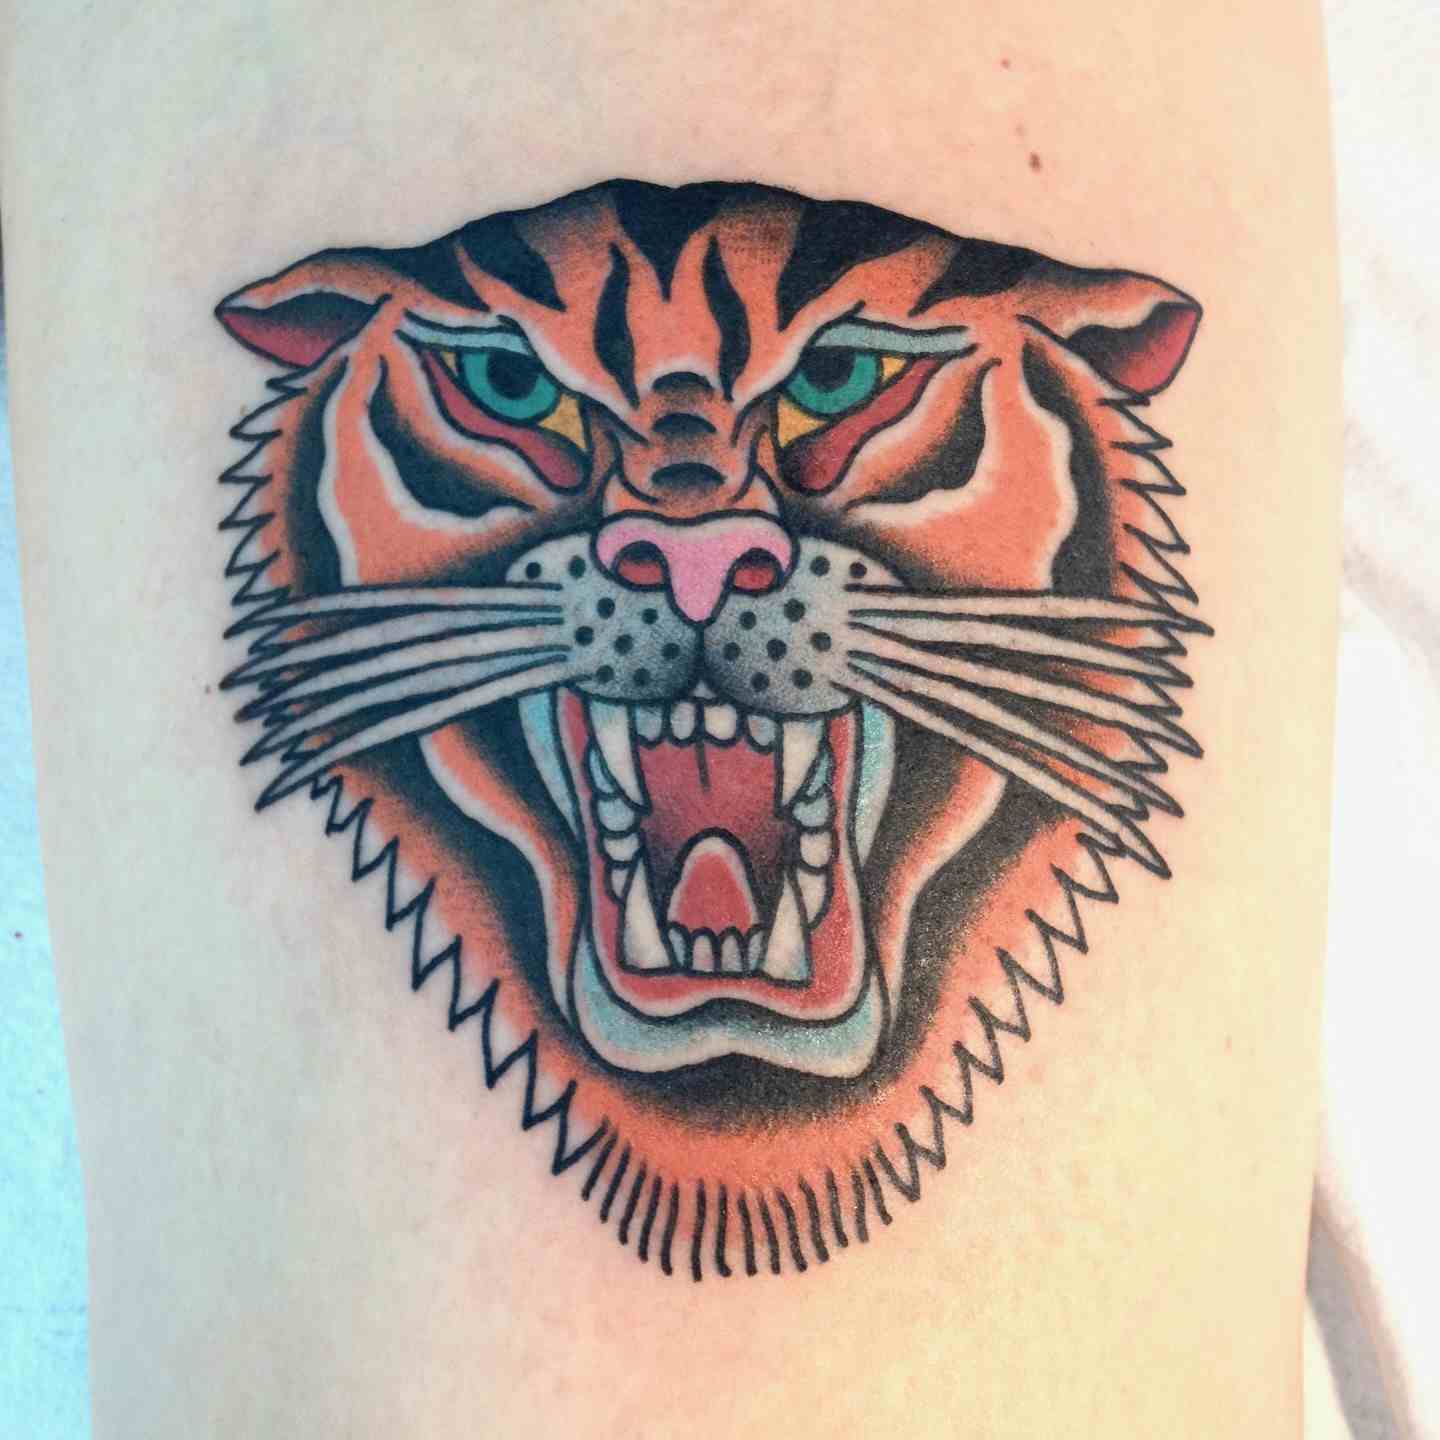 Growling tiger tattoo